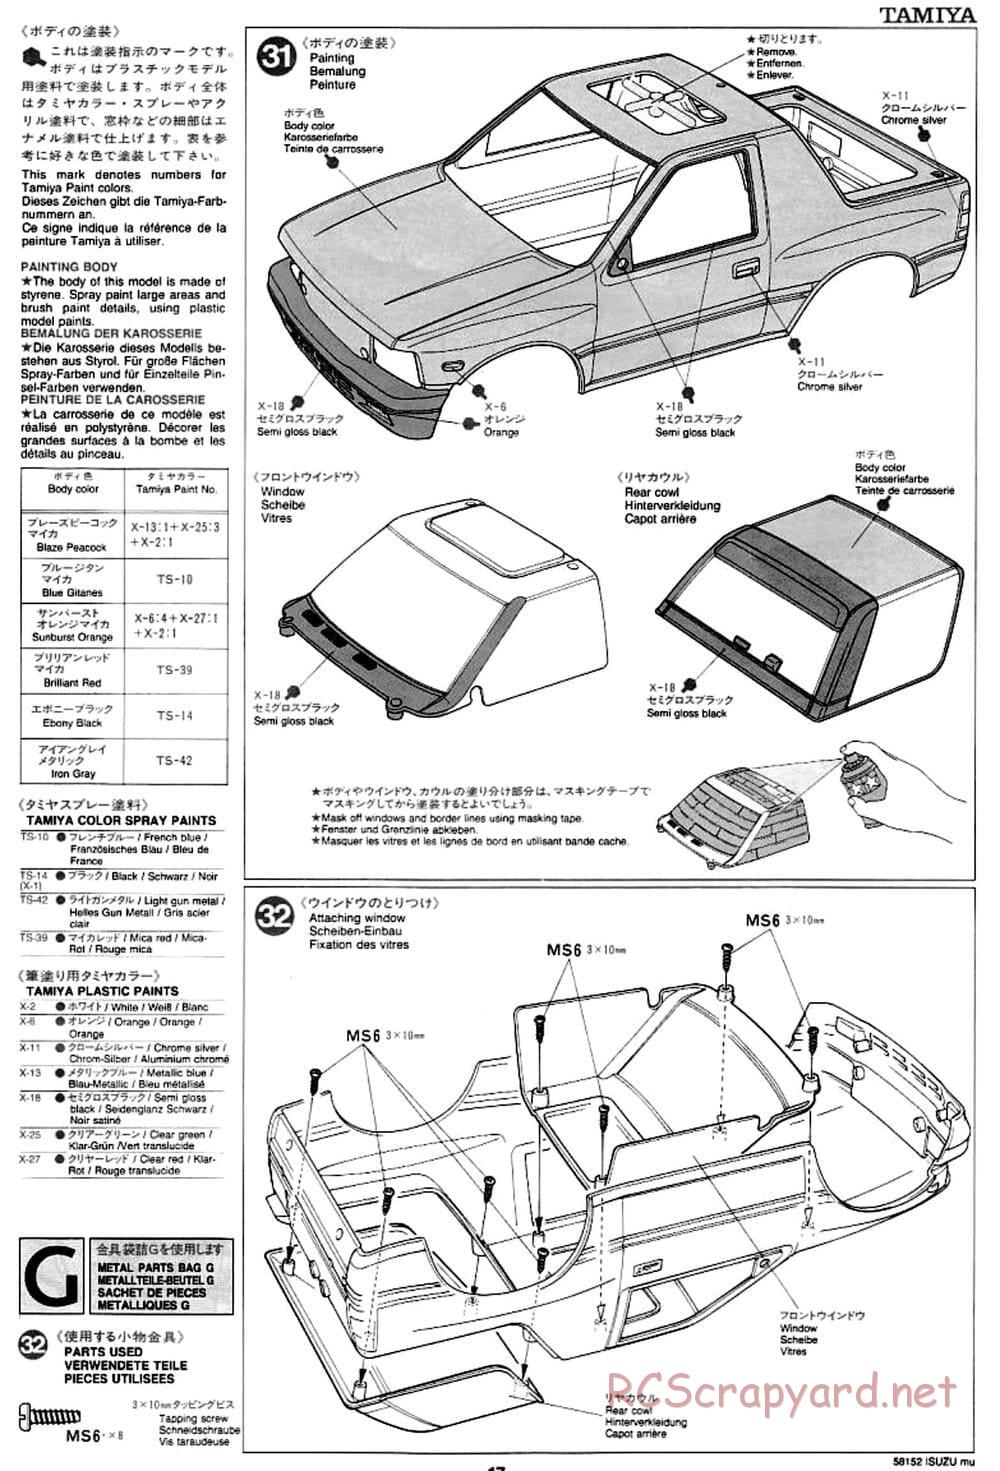 Tamiya - Isuzu Mu - CC-01 Chassis - Manual - Page 17